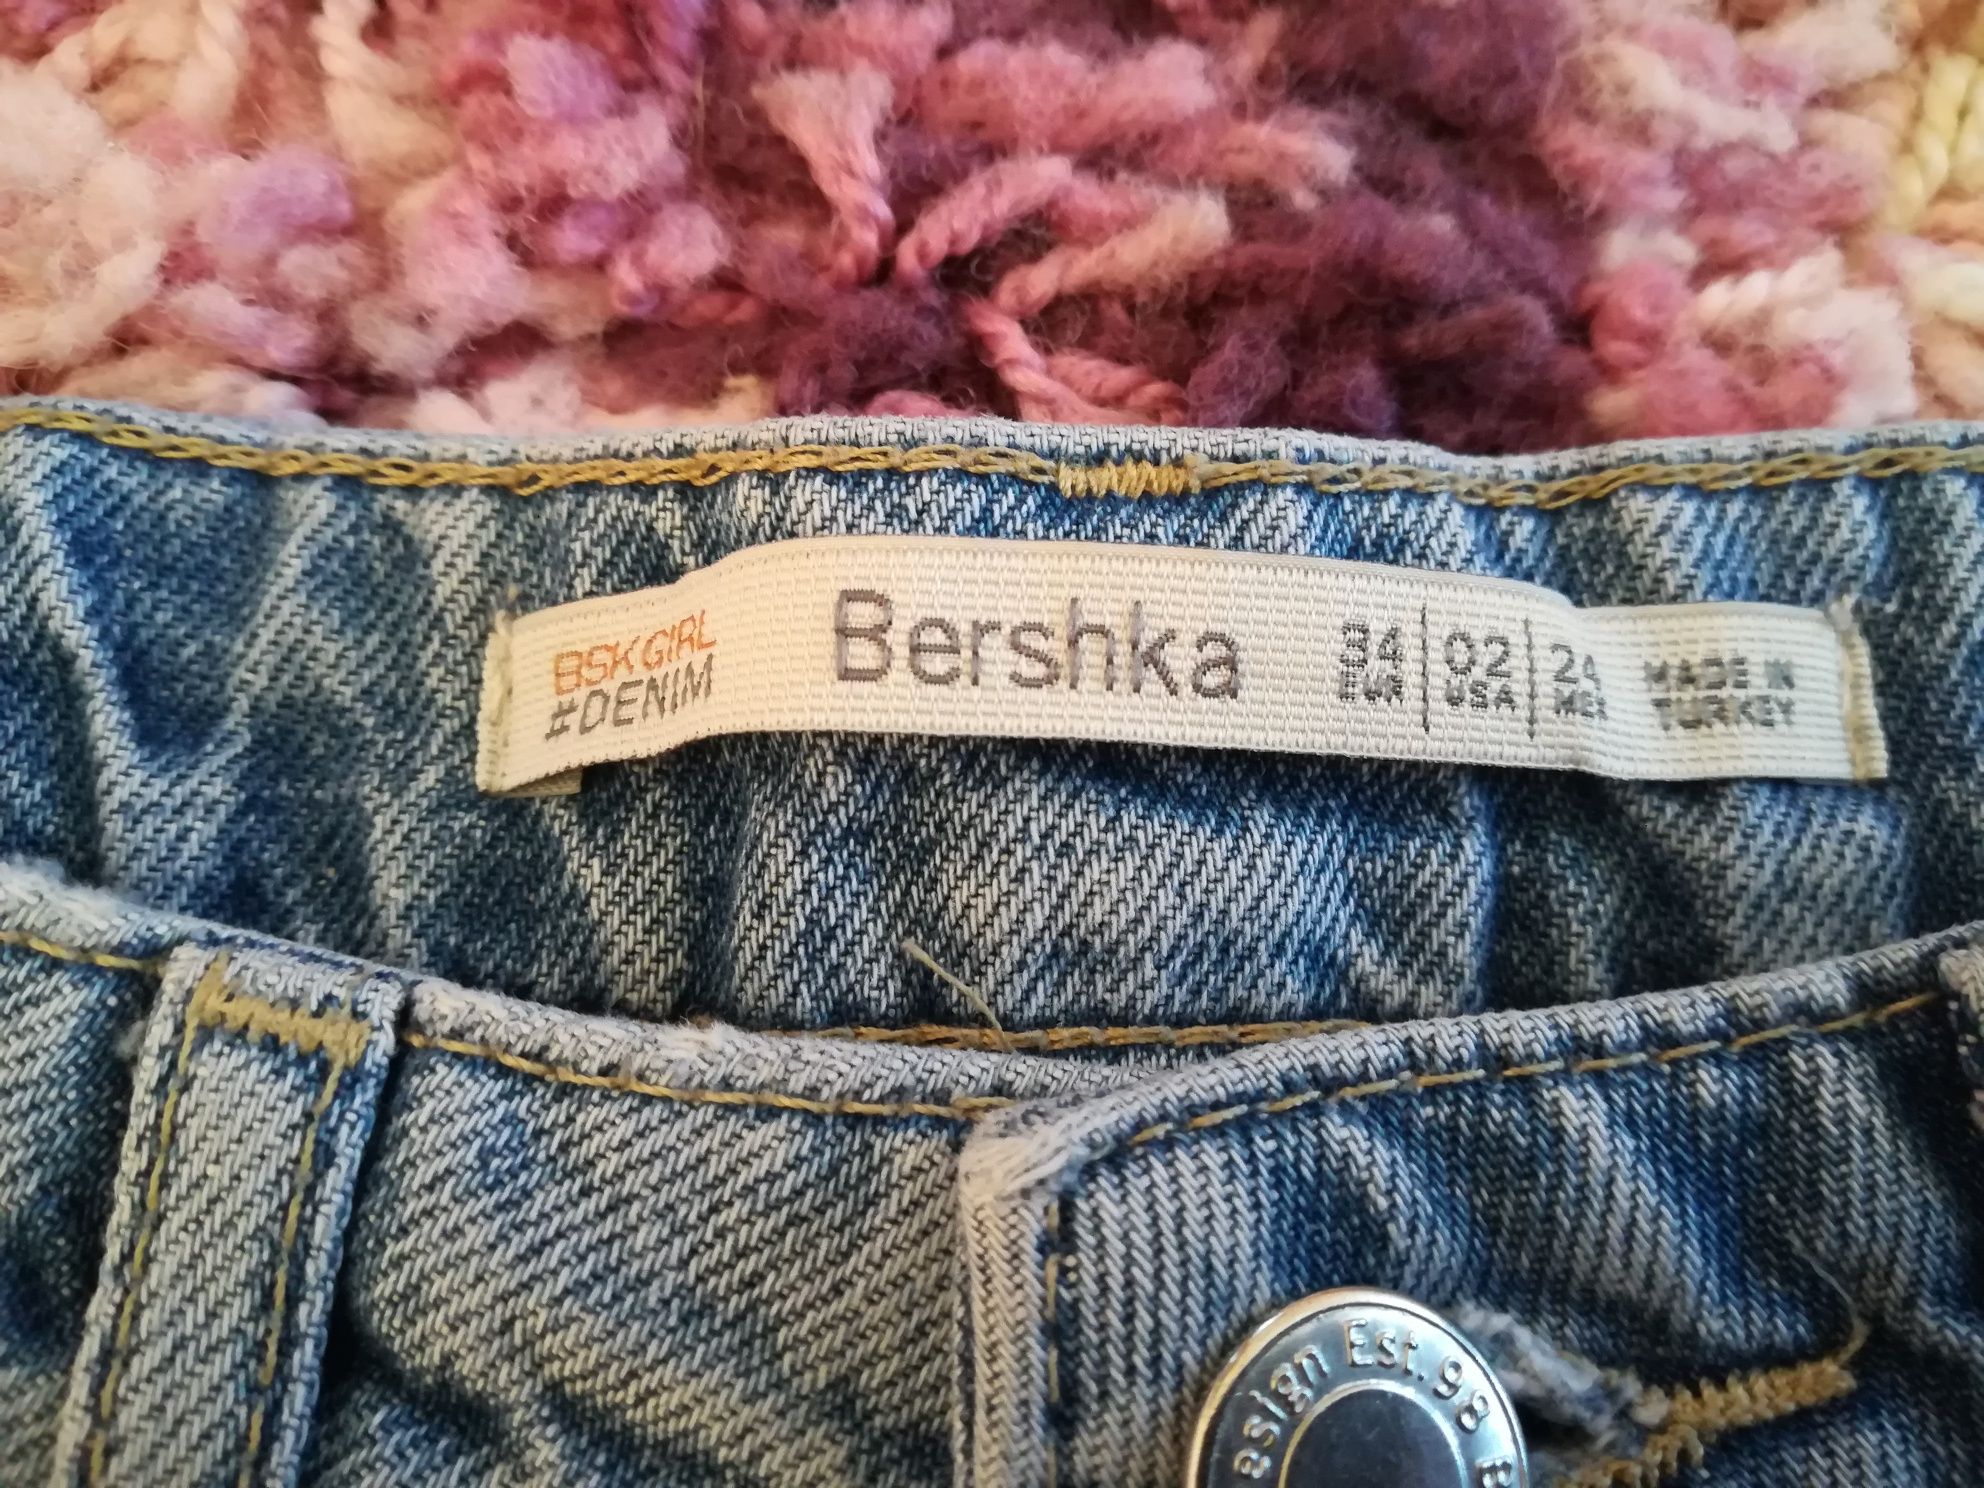 Pantaloni scurți Bershka mărimea 36,impecabili